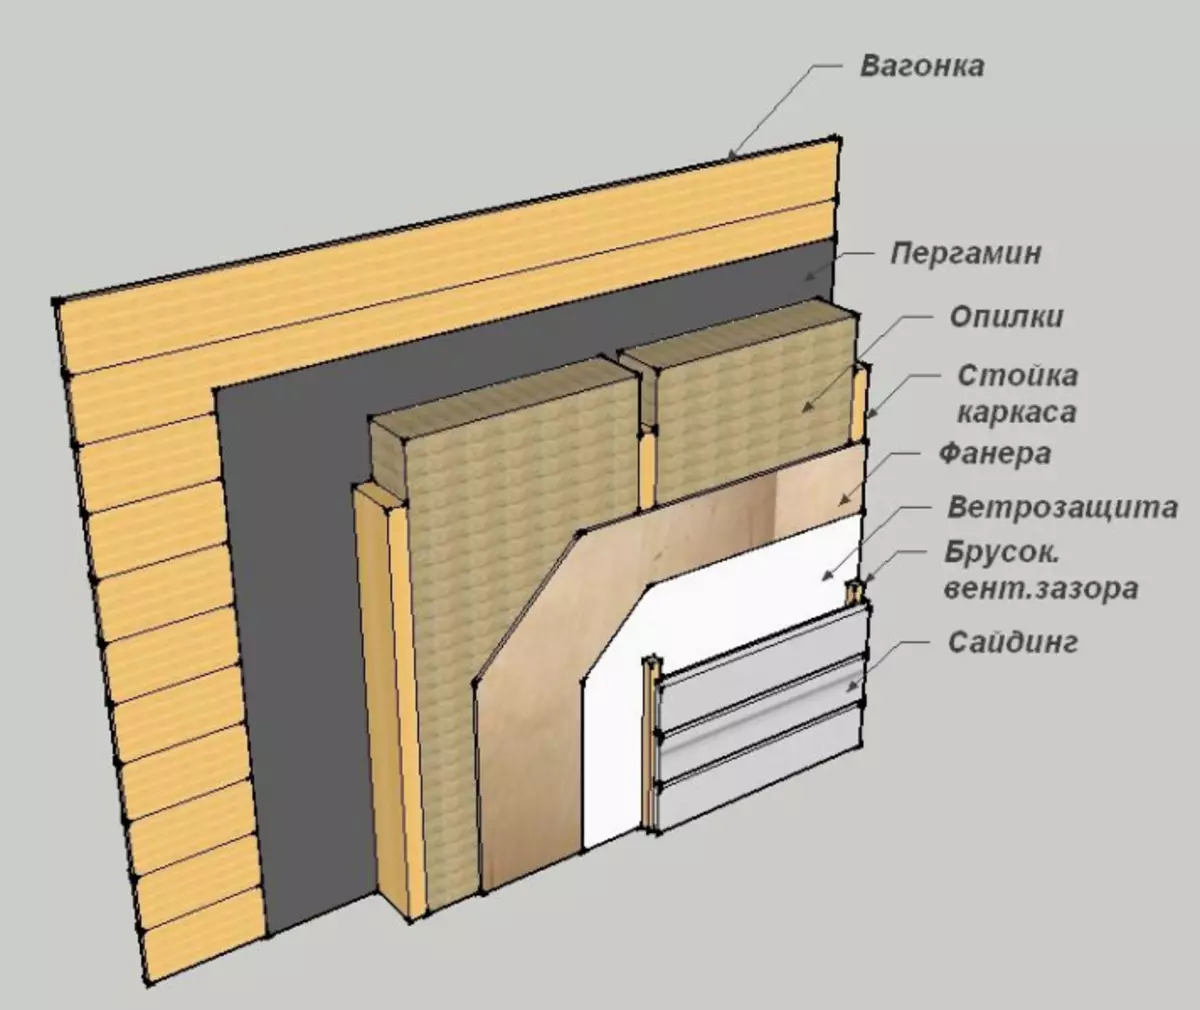 Нужен ли утеплитель между. Схема утепления стен изнутри деревянного дома. Схема стен с утеплителем внутри. Схема утепления стен деревянного дома внутри. Схема утепления стен парилки.